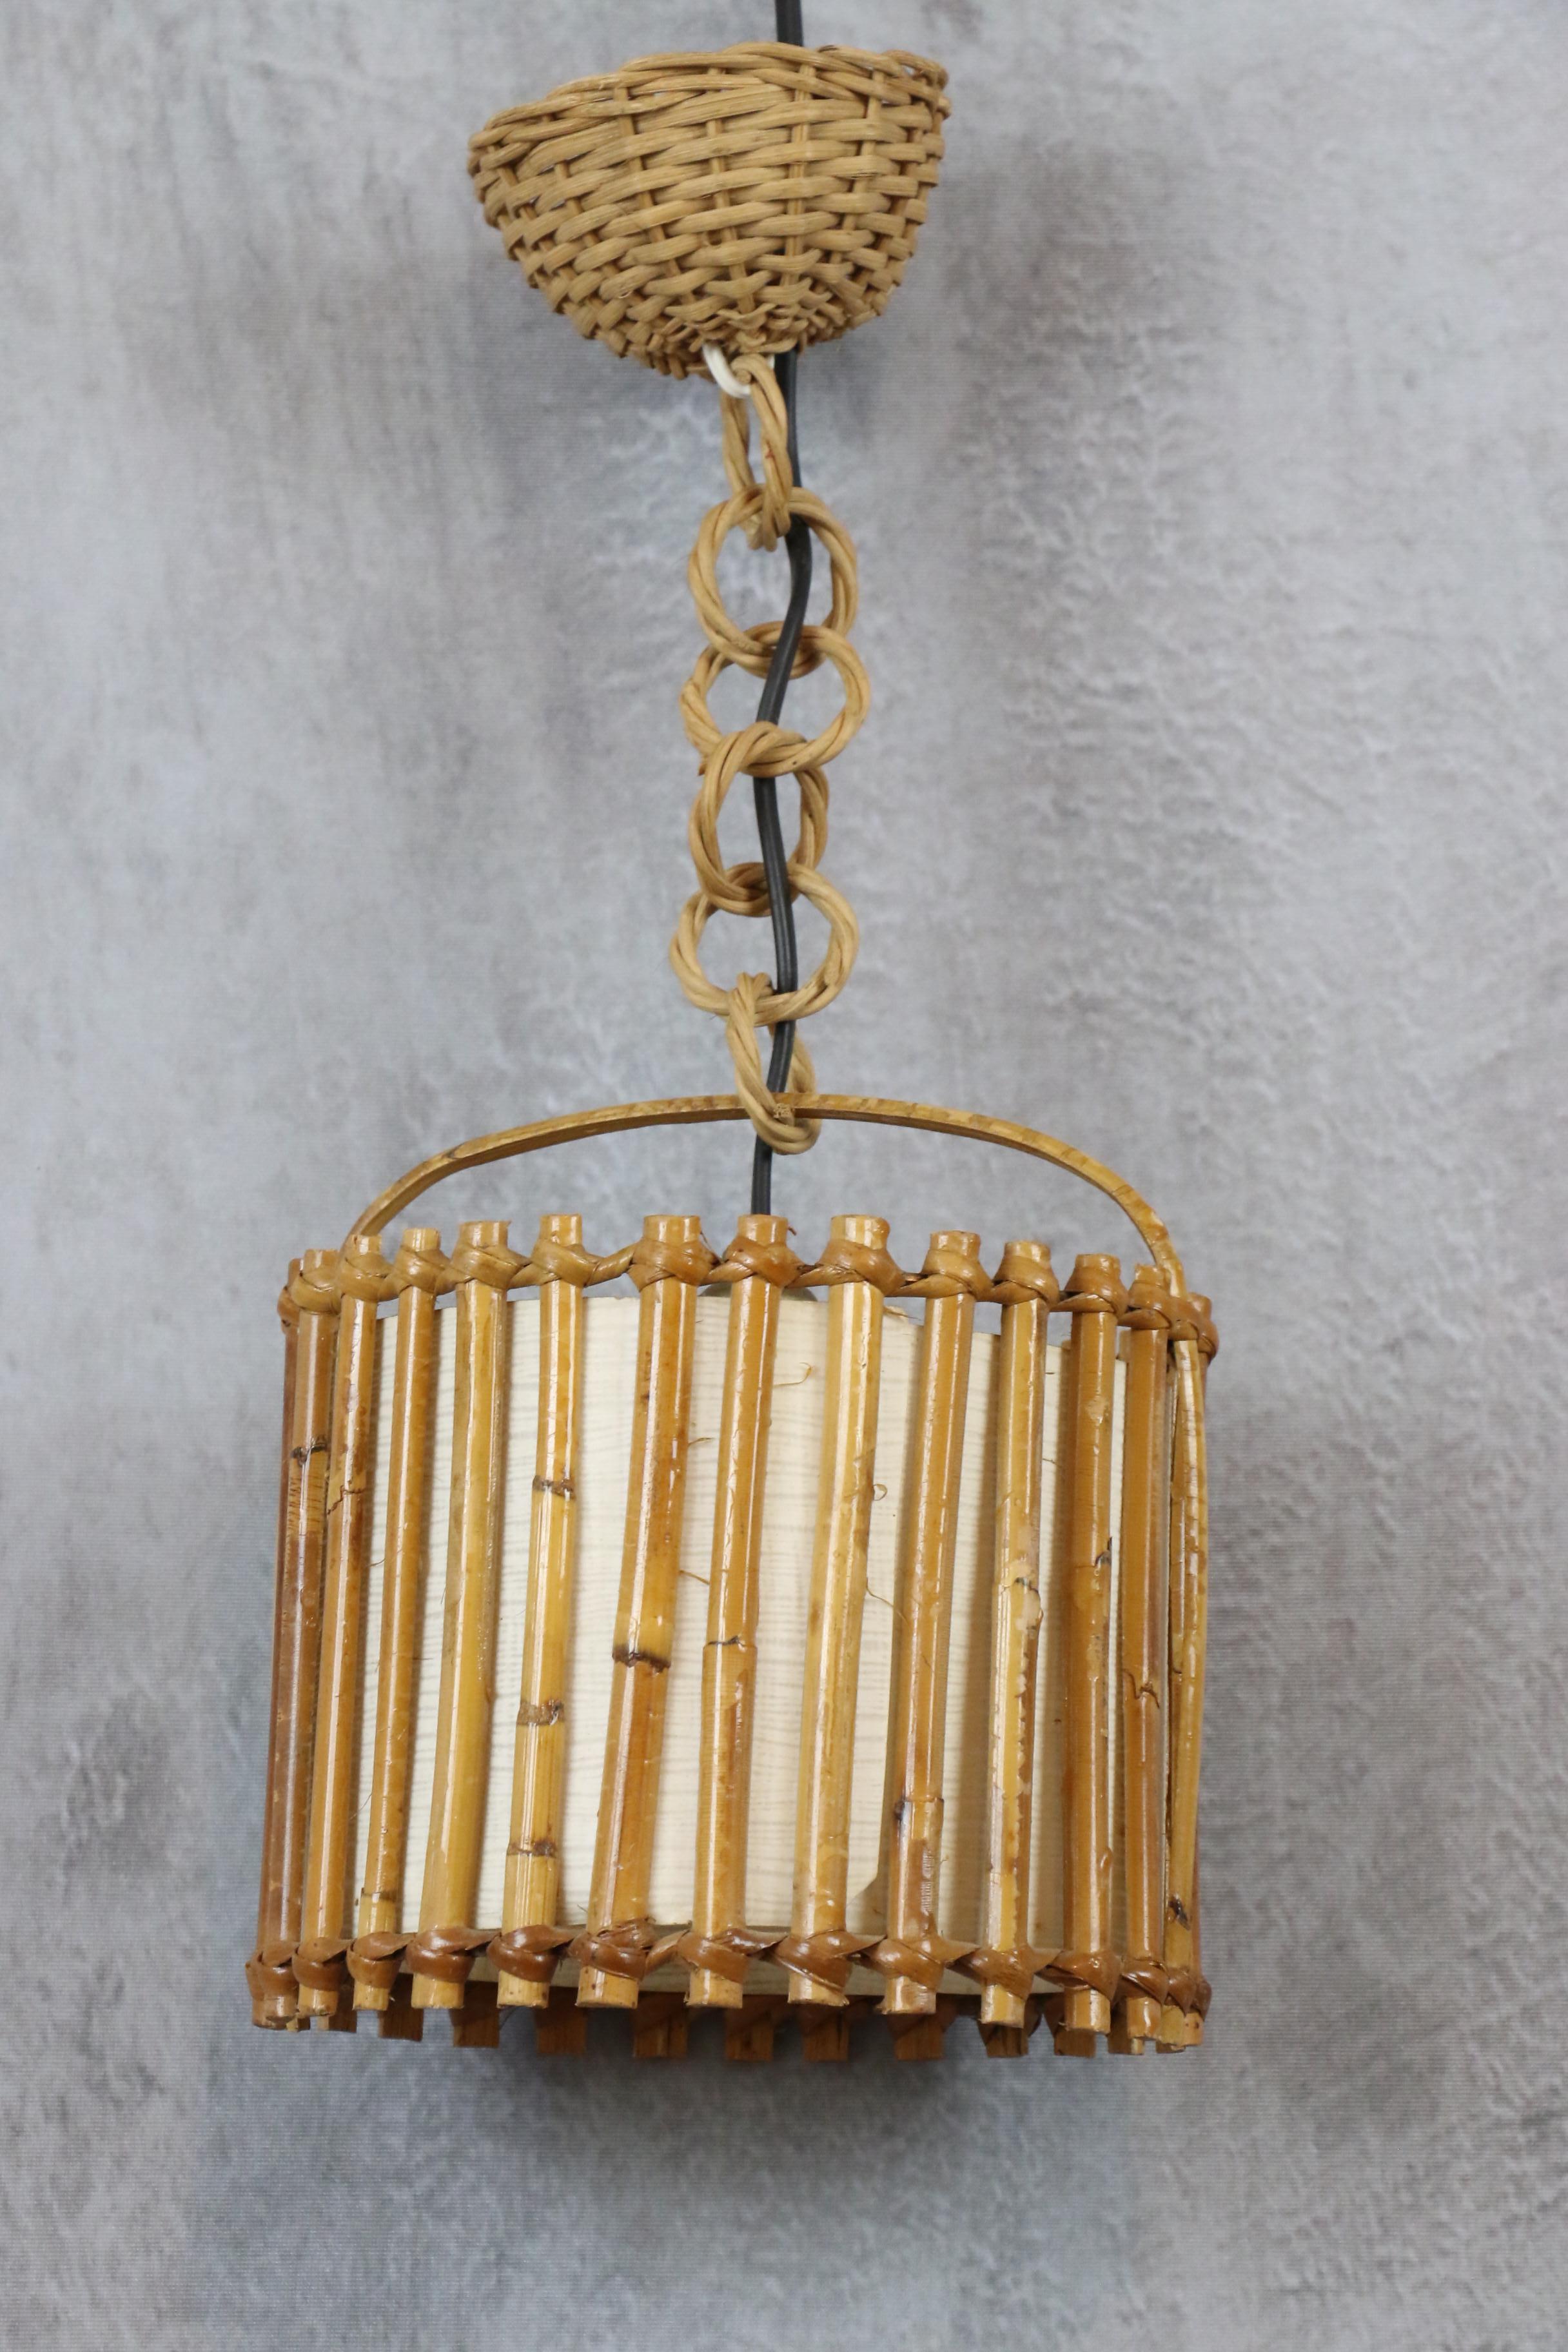 Lustre moderne mi-siècle moderne Louis Sognot, France, 1960

Cette lanterne présente un beau design avec une structure sphérique en rotin.
Il est doté d'un abat-jour en papier qui diffuse une lumière douce et chaude. Il est suspendu à une chaîne en